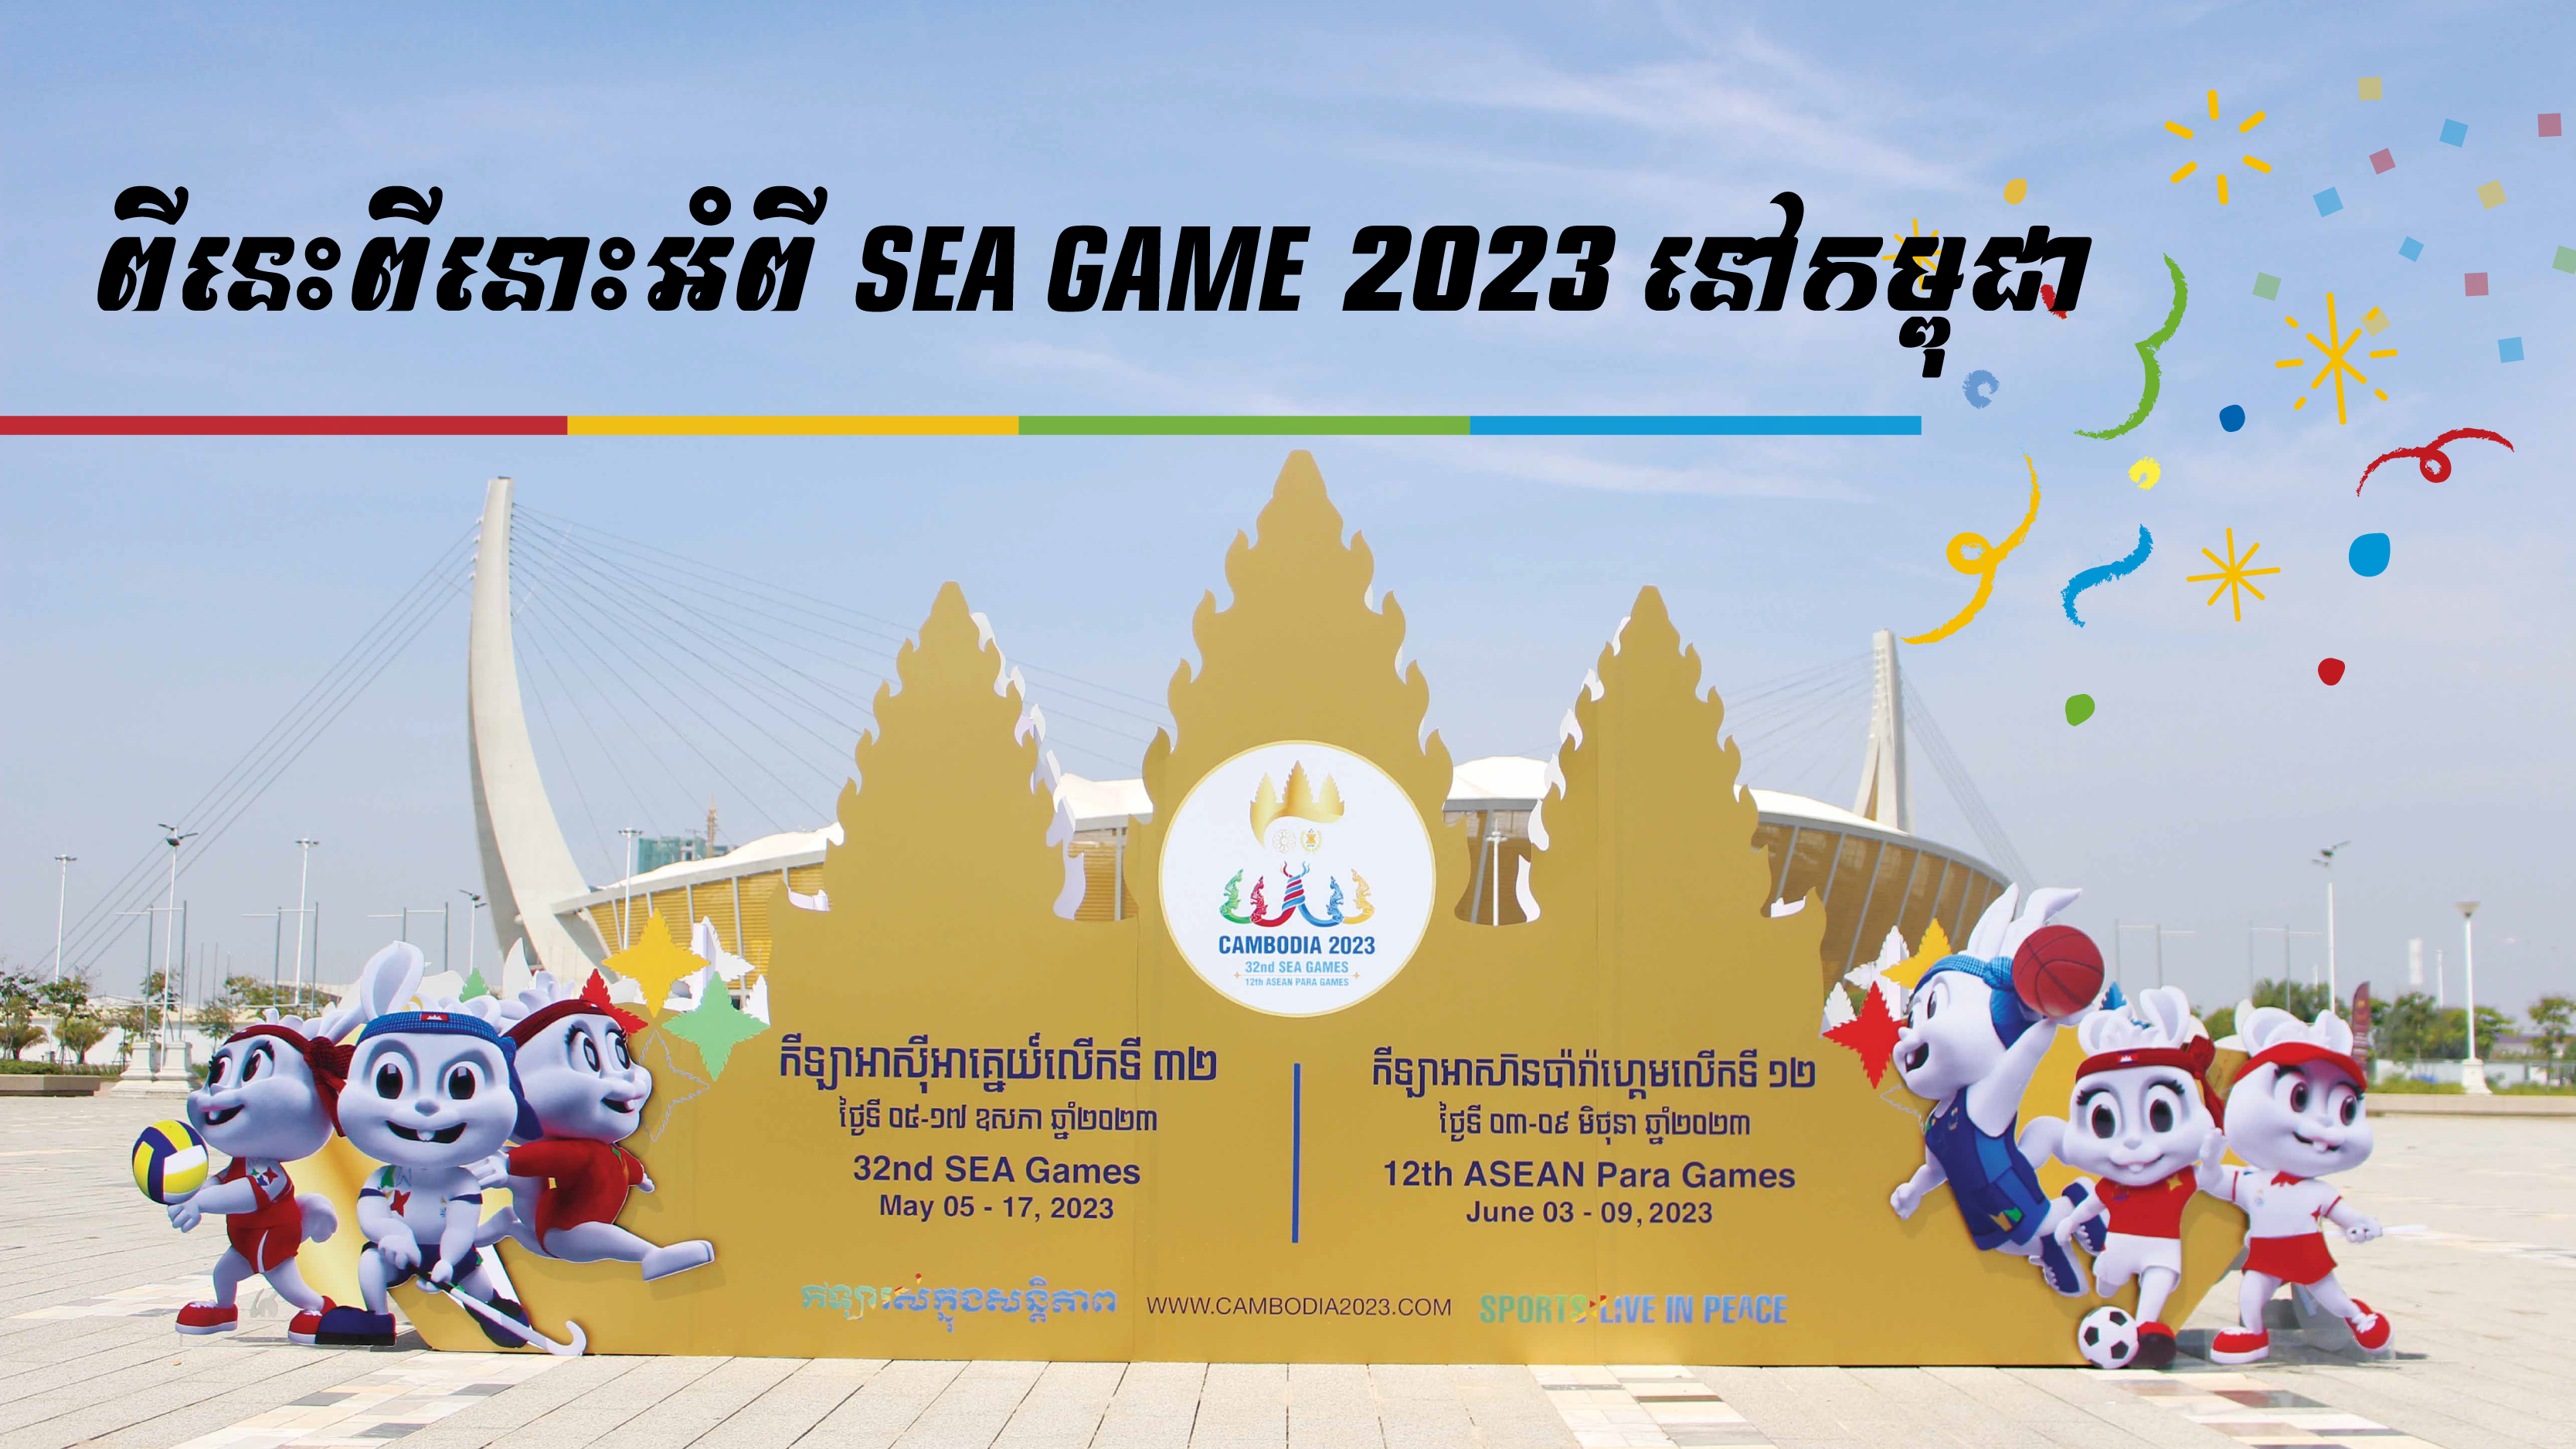 (ភាសាខ្មែរ) ពីនេះពីនោះអំពី SEA GAME 2023 នៅកម្ពុជា